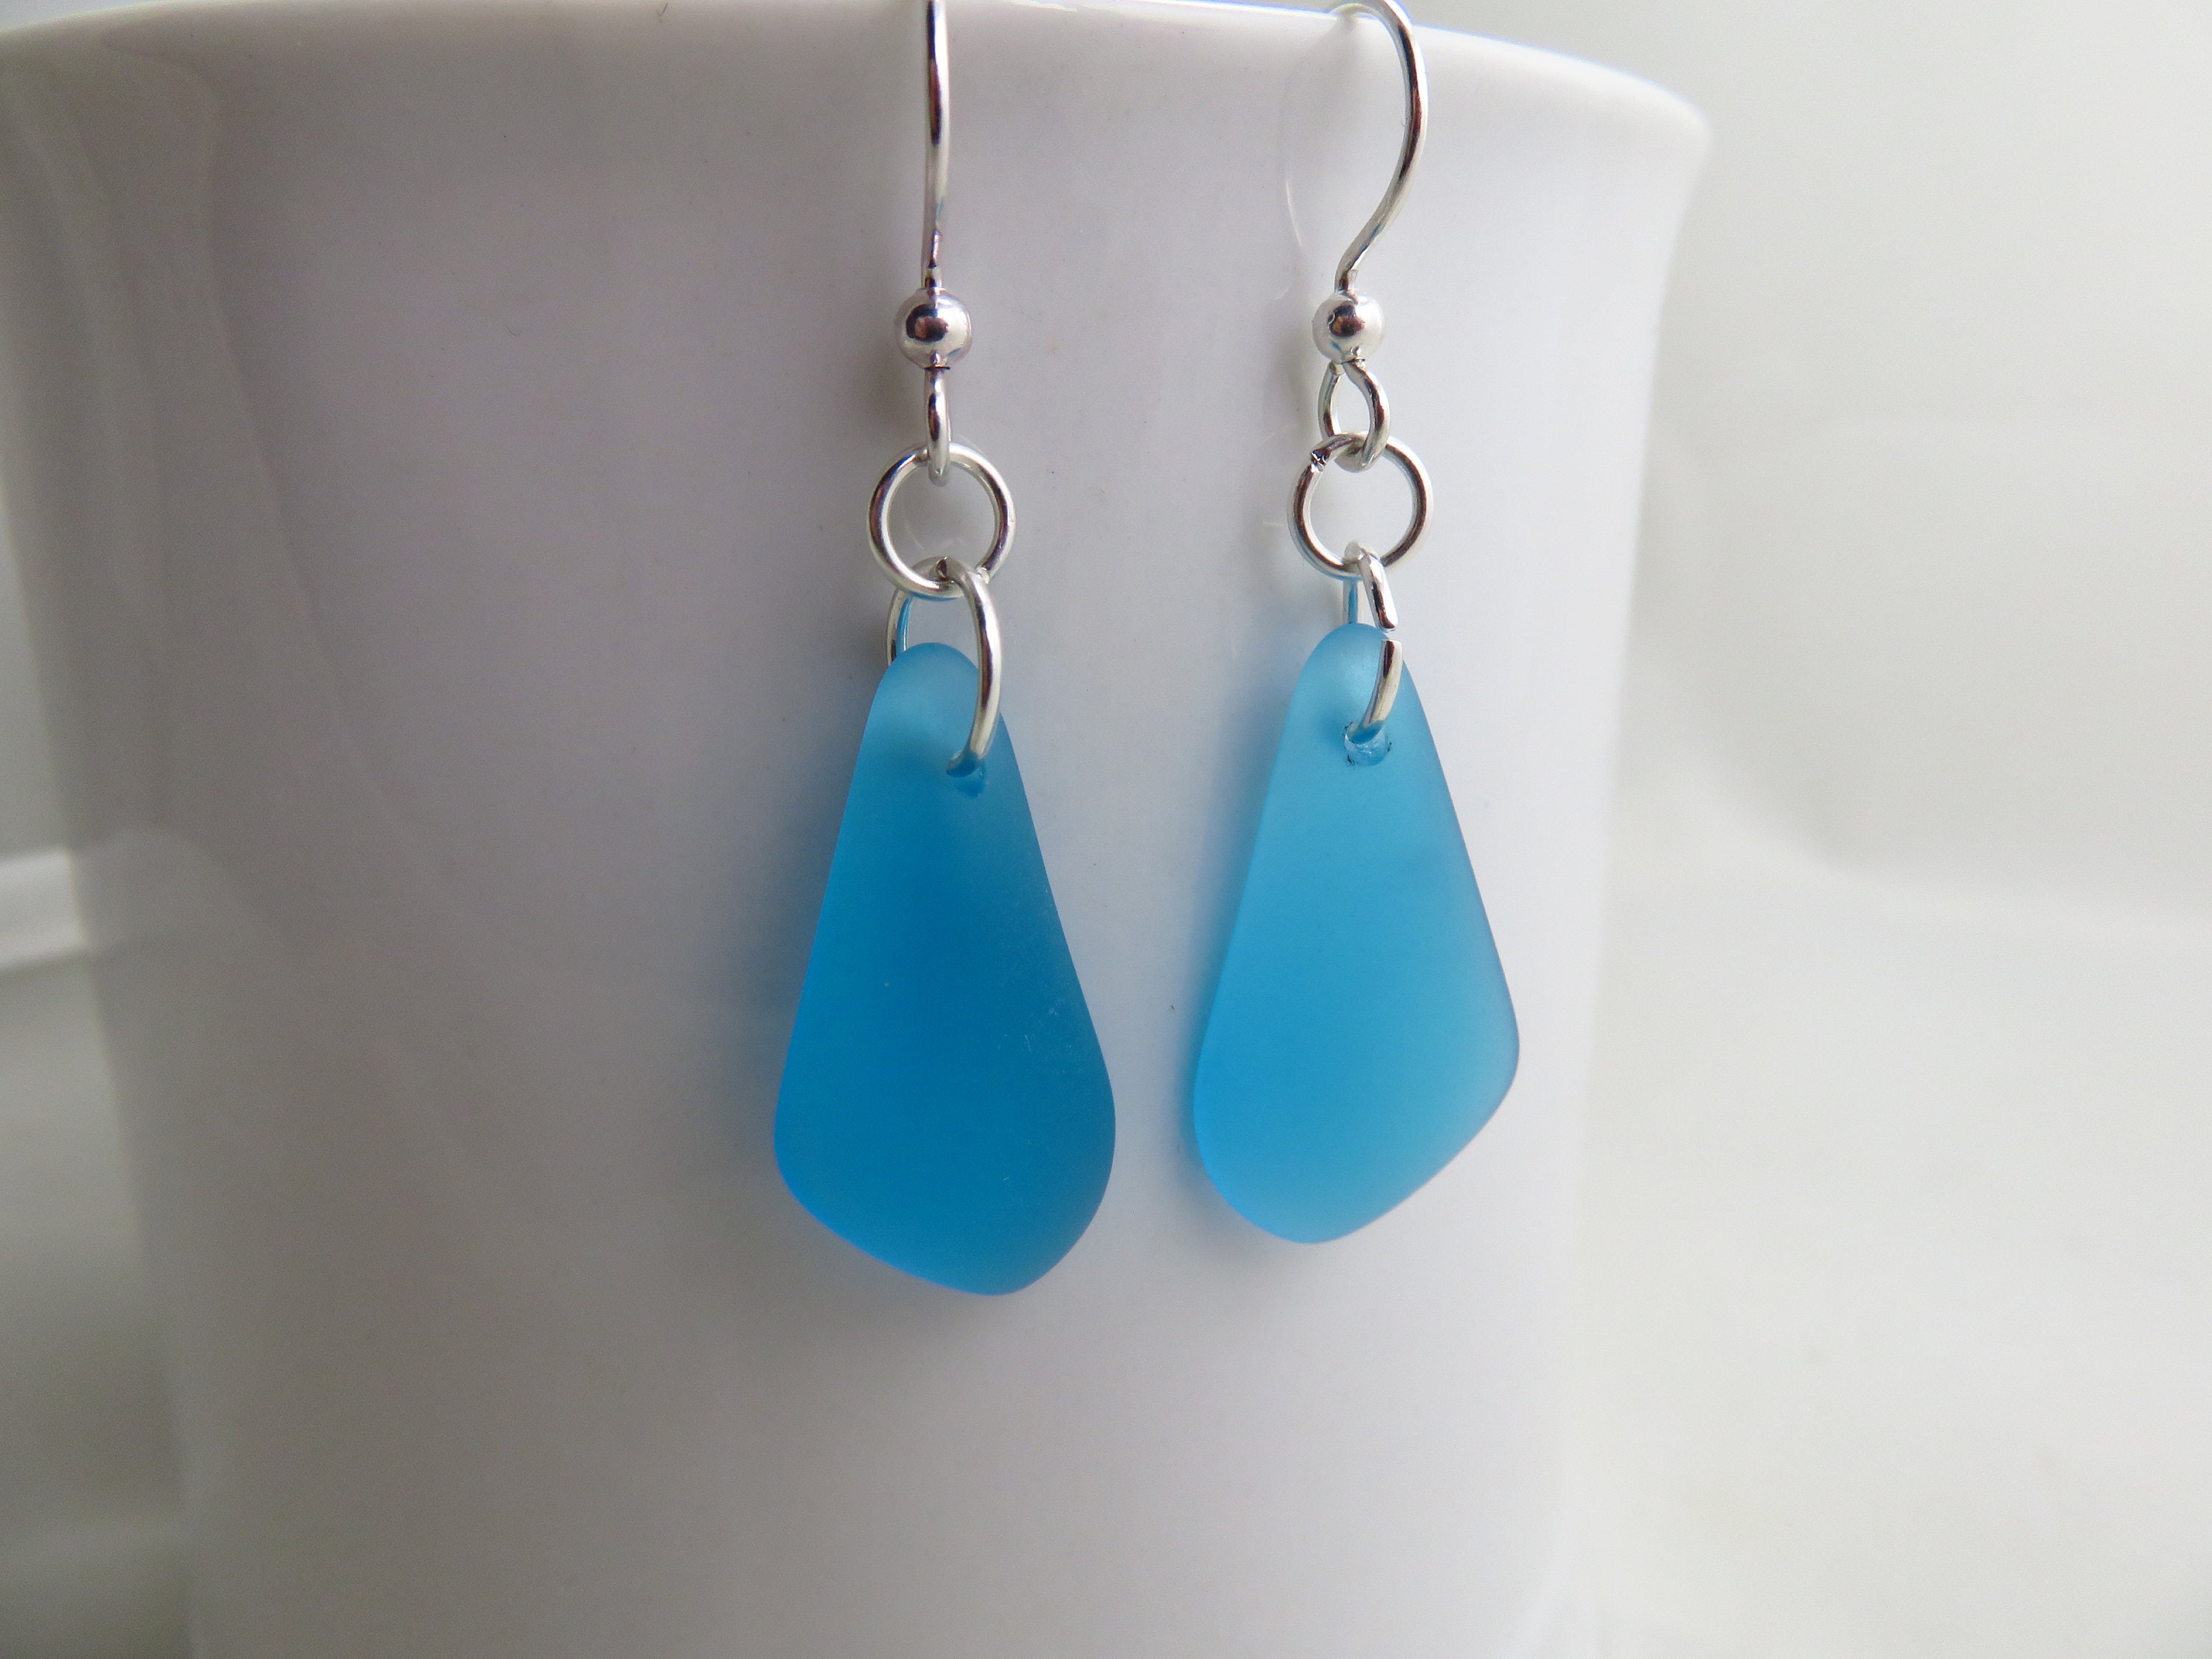 Sea glass earrings | Etsy